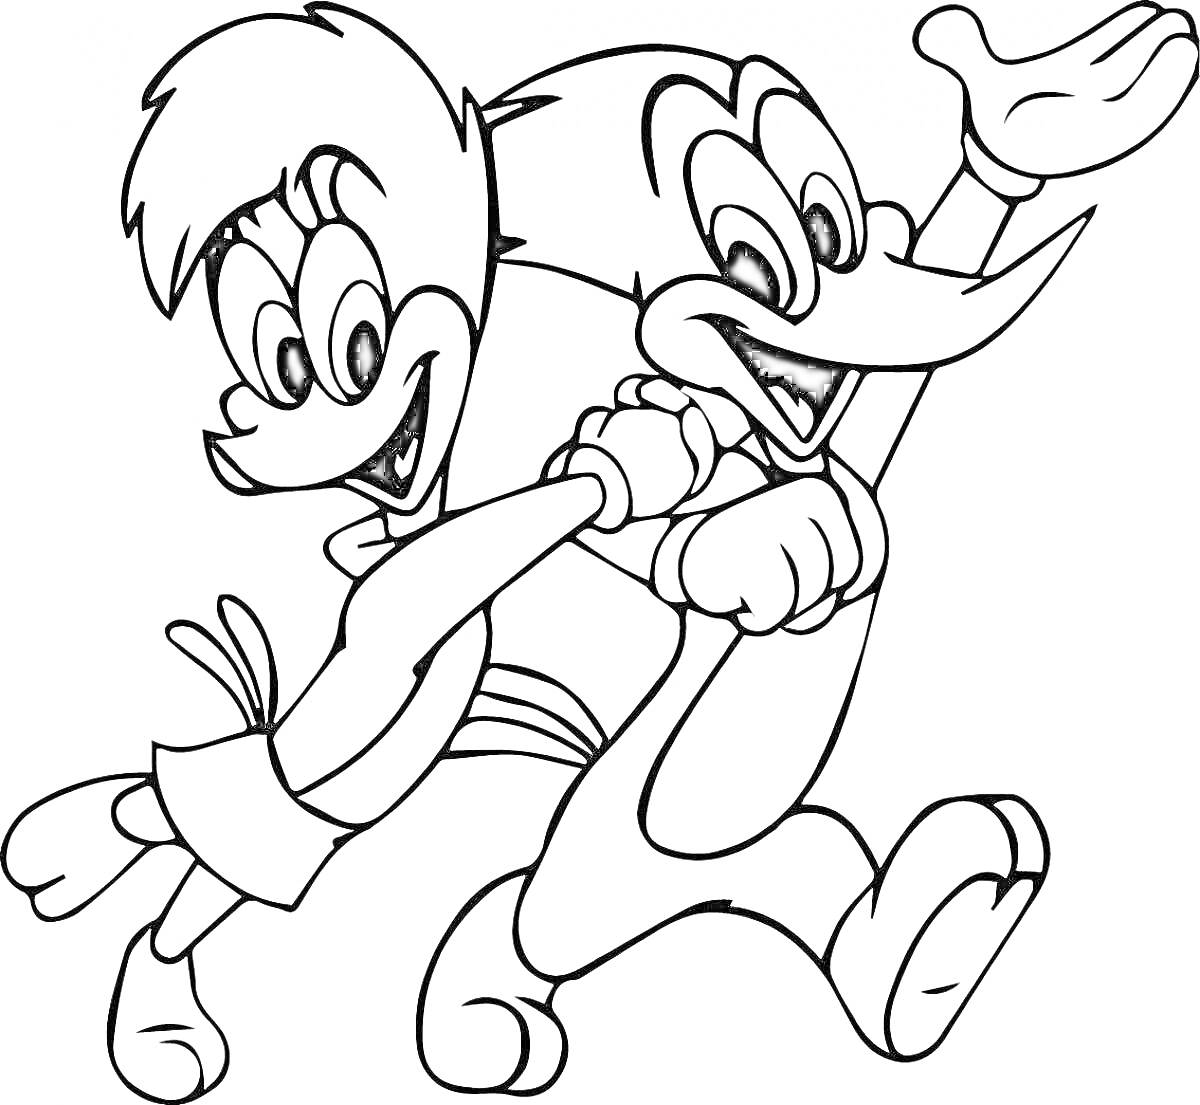 Раскраска Два мультяшных персонажа бегут, один из которых машет рукой